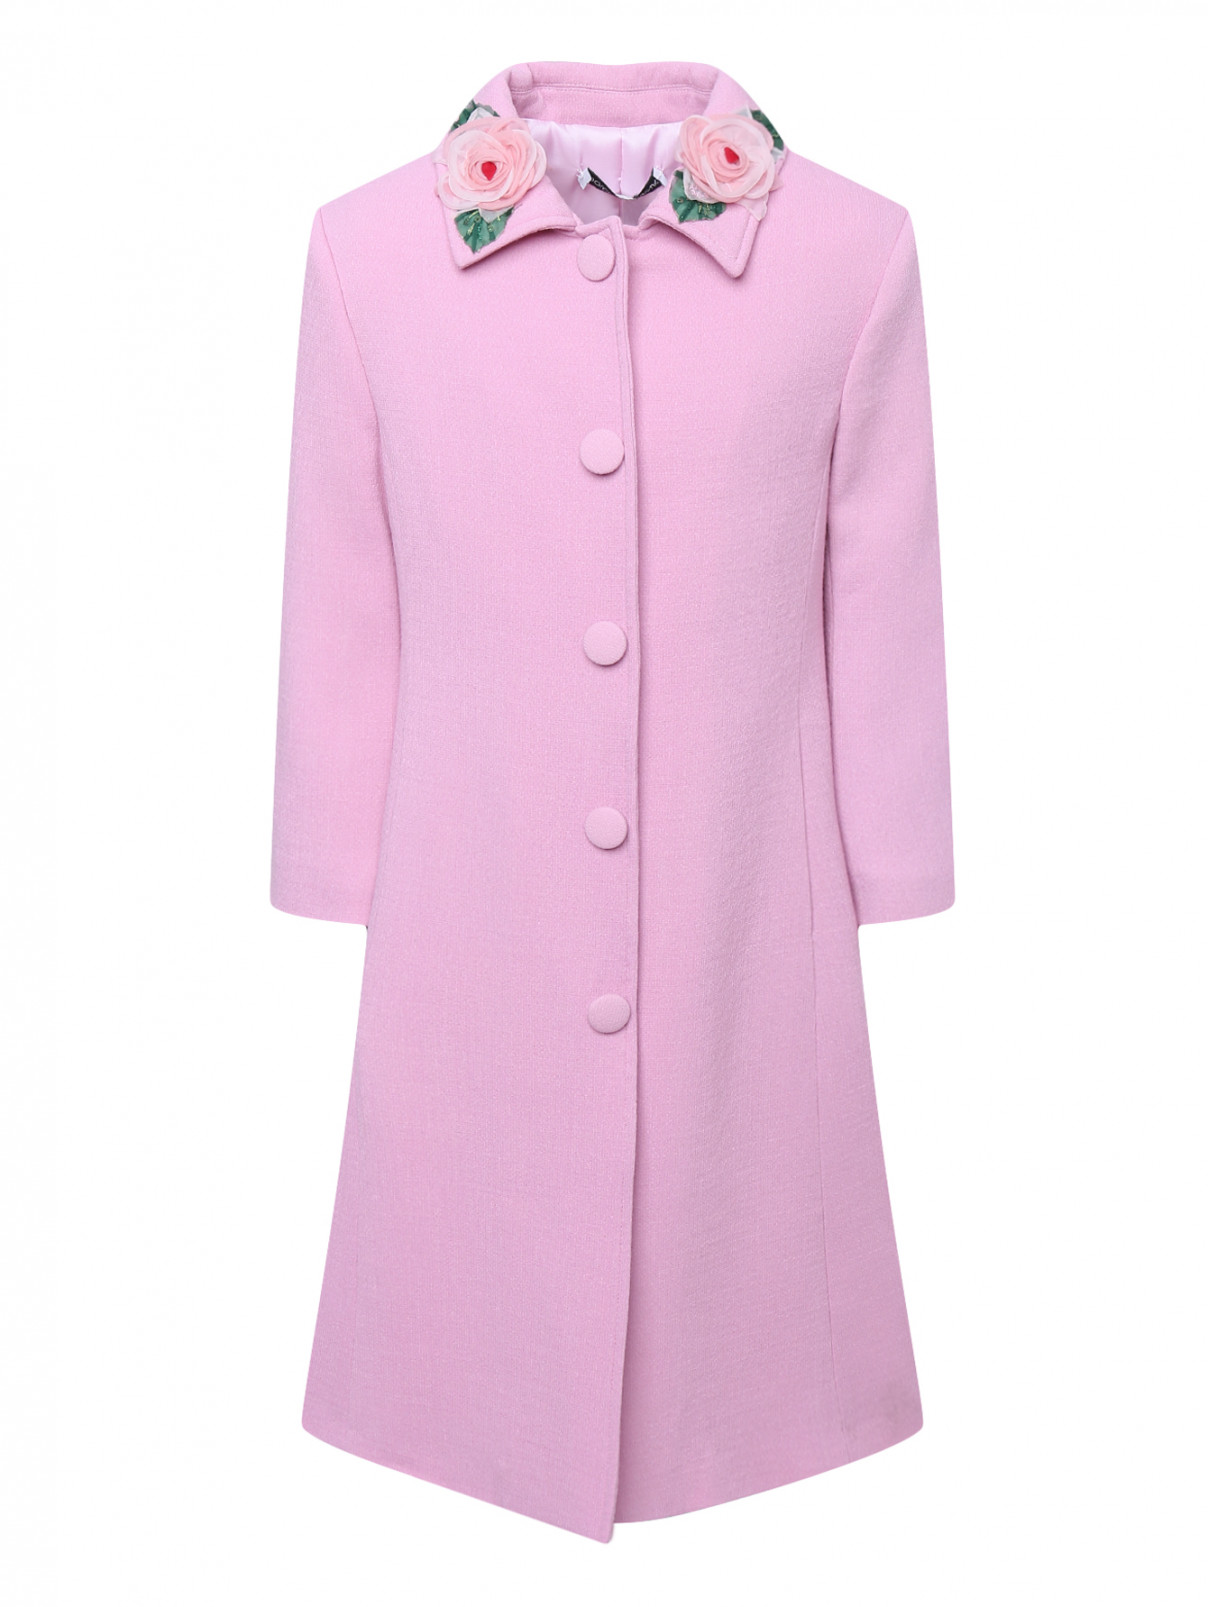 Пальто легкое с аппликацией на вороте Dolce & Gabbana  –  Общий вид  – Цвет:  Розовый